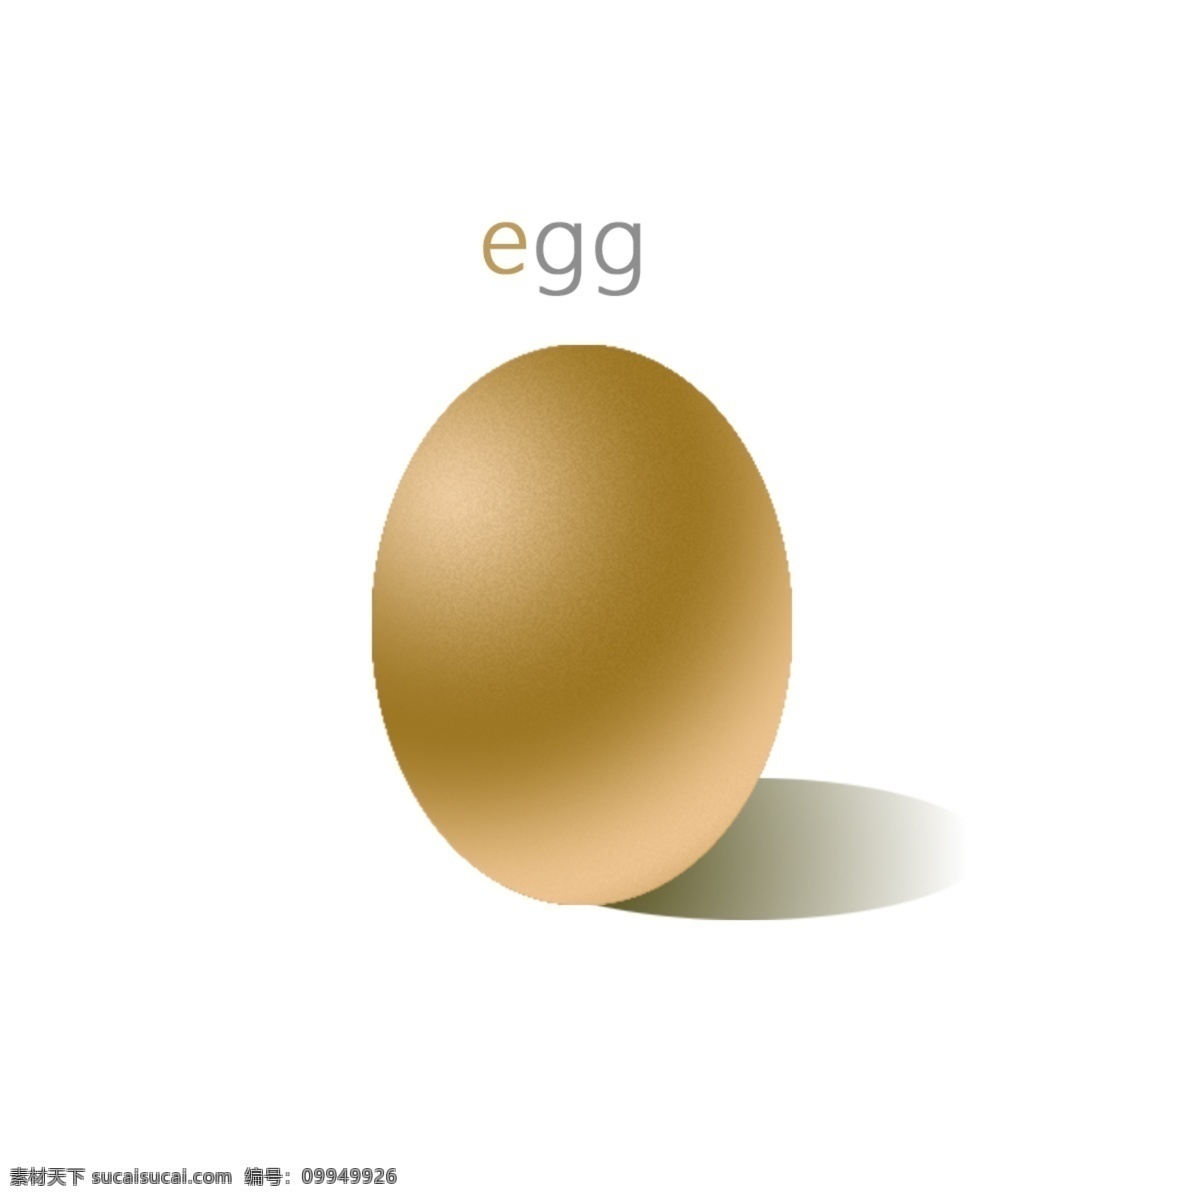 金 蛋 砸 开奖 礼 鸡蛋 金蛋 砸蛋 金蛋素材 砸金蛋素材 金蛋有礼 砸蛋元素